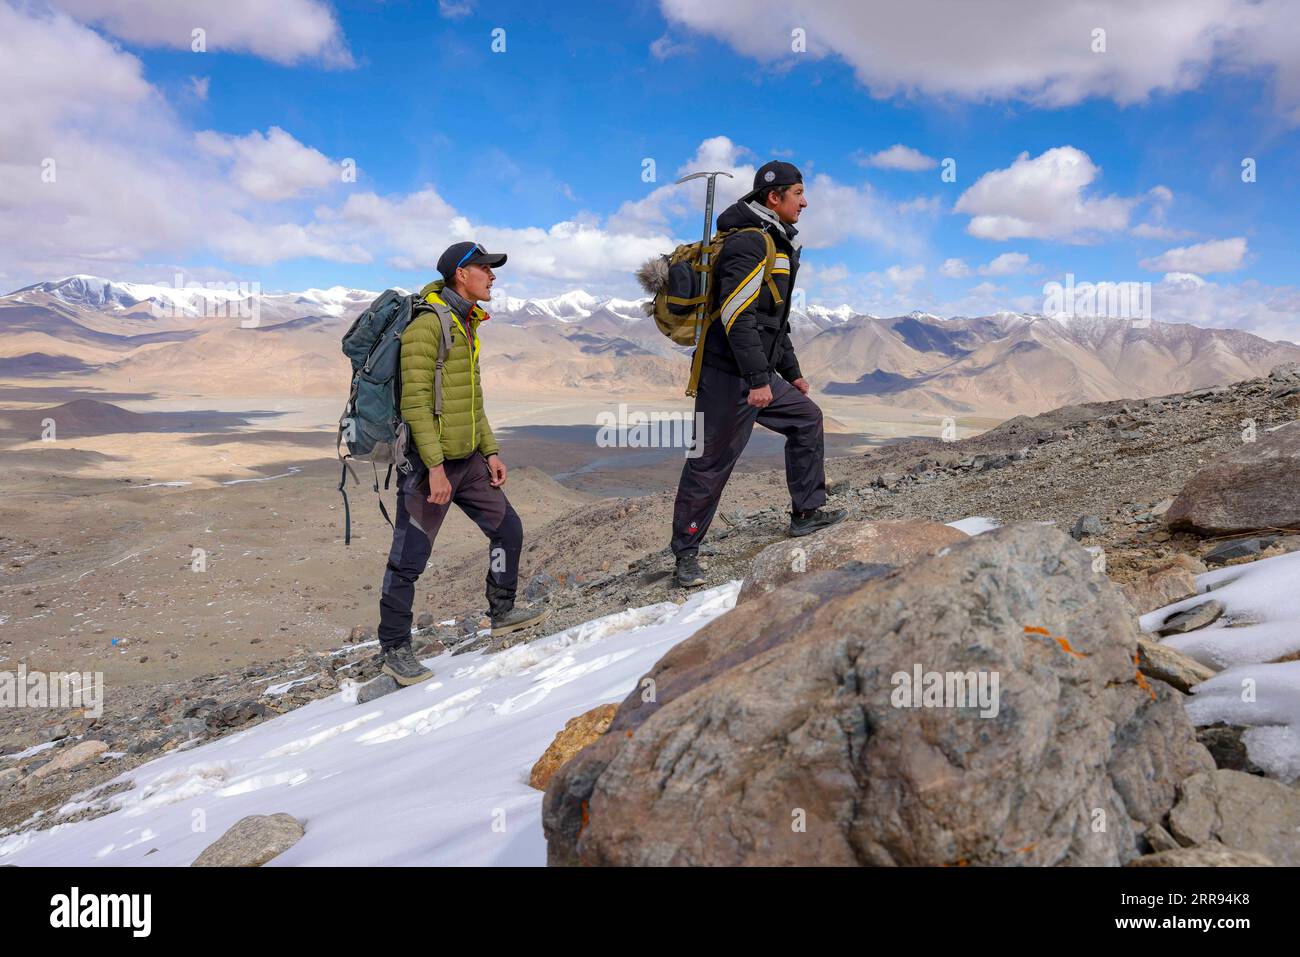 210528 -- URUMQI, 28 maggio 2021 -- Bikmirza Turdil R prende parte ad un addestramento mirato sulla Muztagh Ata nella regione autonoma di Xinjiang Uygur della Cina nord-occidentale, 15 maggio 2021. Bikmirza, un allevatore di 24 anni, nacque e crebbe ai piedi del Muztagh Ata, un picco con un'altitudine di oltre 7.500 metri, nella regione autonoma di Uygur dello Xinjiang Pamir in Cina. Ha iniziato a lavorare come guida aiutando gli scalatori a trasportare attrezzature e provviste all'età di 18 anni. Scalare il Muztagh Ata, un simbolo di coraggio, è anche considerato come la cerimonia di raggiungimento della maggiore età per i giovani locali. A Subax Villag Foto Stock